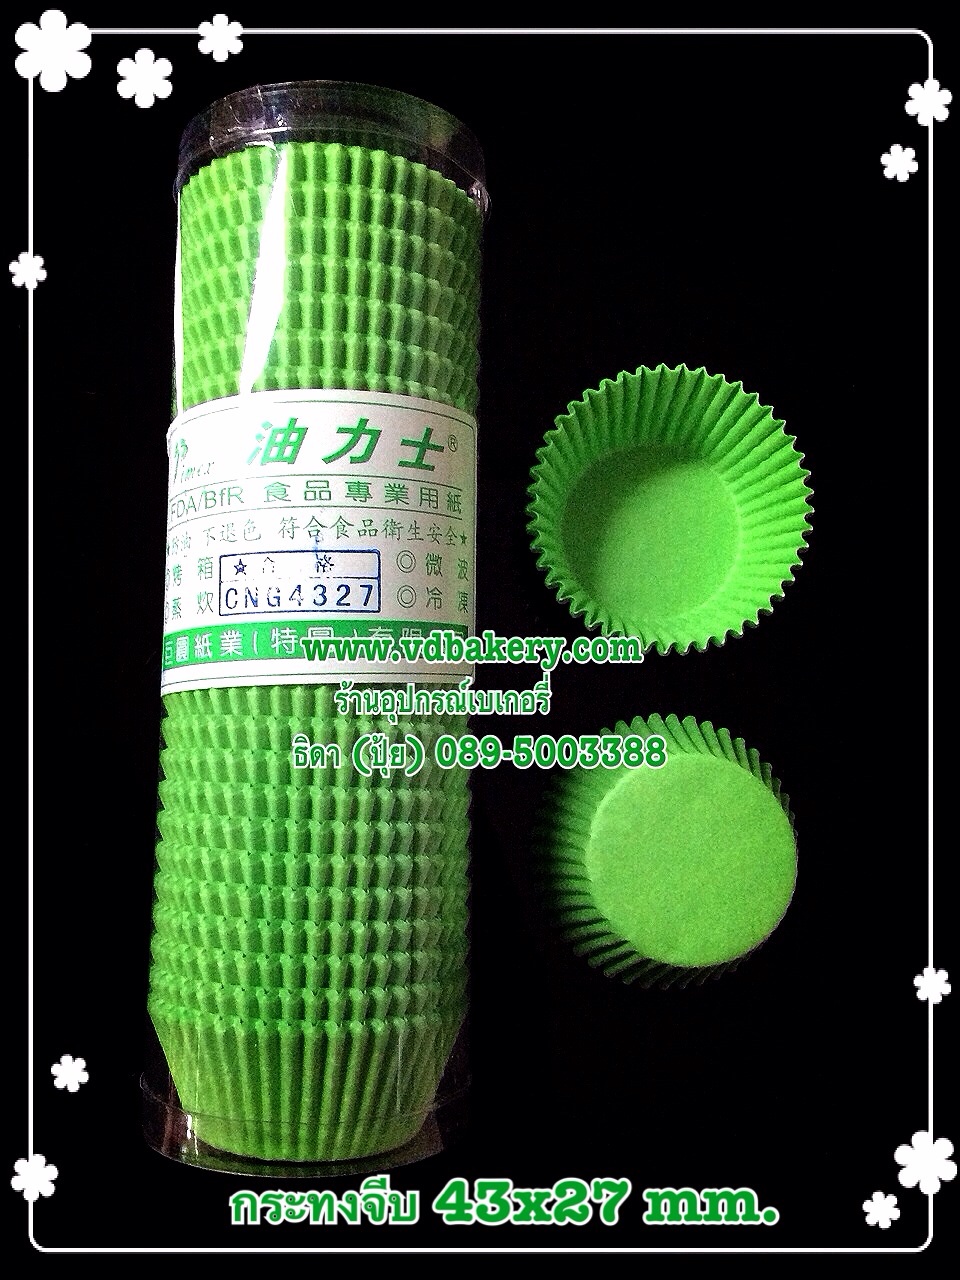 (630304) กระทงจีบ PC-C 4327 สีเขียว (600ใบ/แถว)